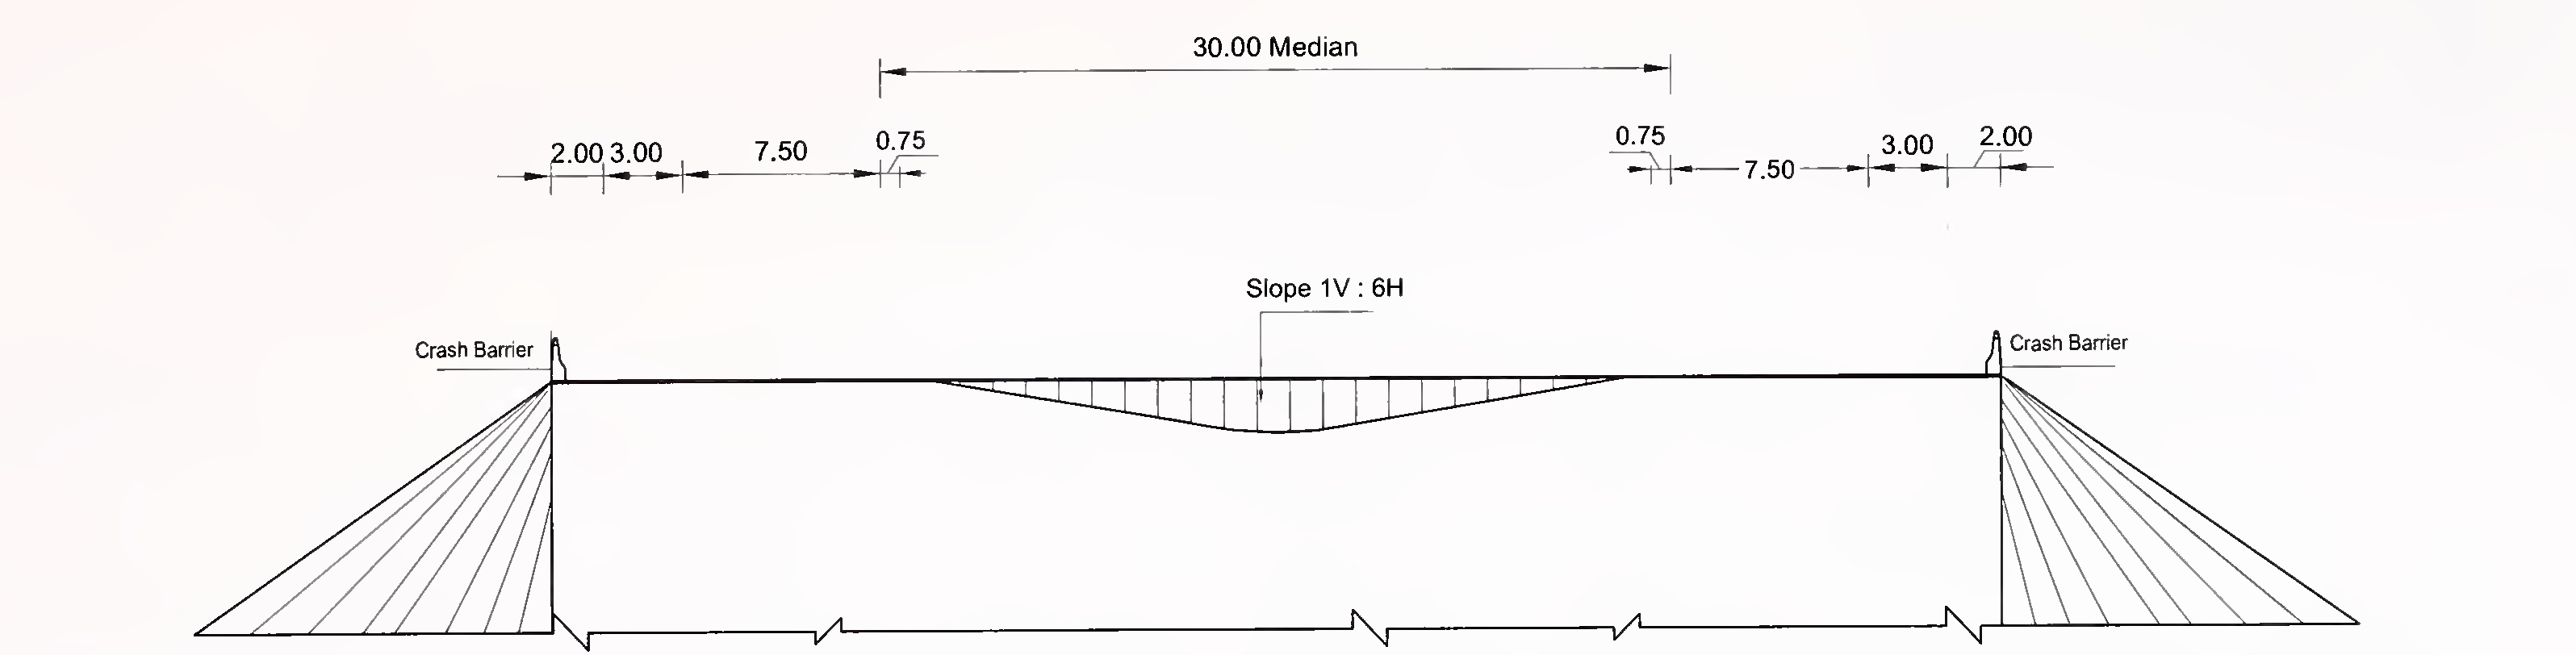 ചിത്രം 6.3 (എ) 4-ലെയ്‌നിനുള്ള സ്ലാബിന്റെയും ബോക്സ് തരം കൽ‌വർട്ടിന്റെയും സാധാരണ ക്രോസ്-സെക്ഷൻ (2 × 2) വിഷാദമുള്ള മീഡിയൻ ഉള്ള എക്സ്പ്രസ് വേ